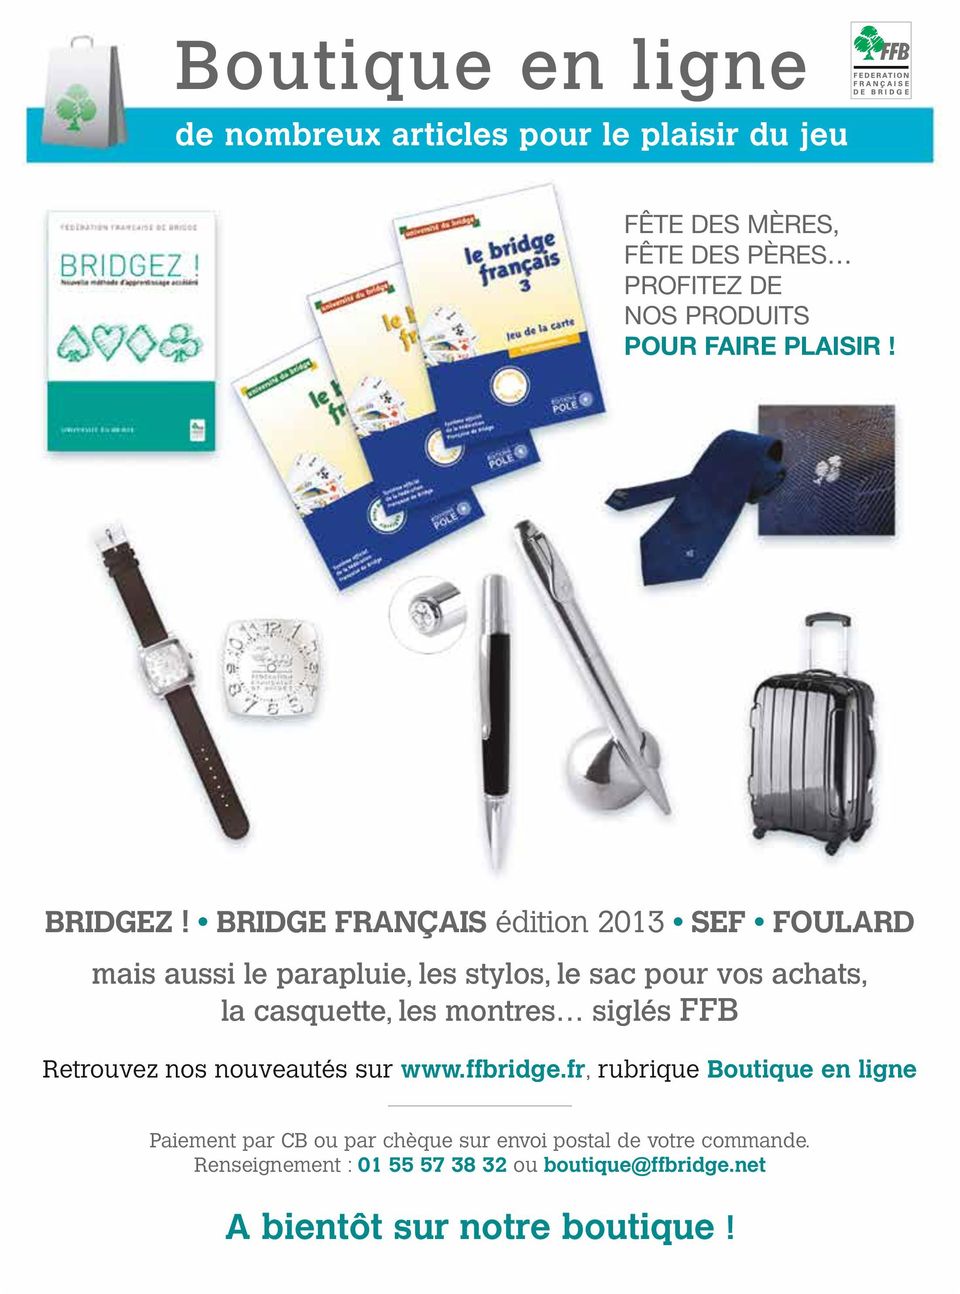 BRIDG FRAÇAI édition 2013 F FULARD mais aussi le parapluie, les stylos, le sac pour vos achats, la casquette, les montres siglés